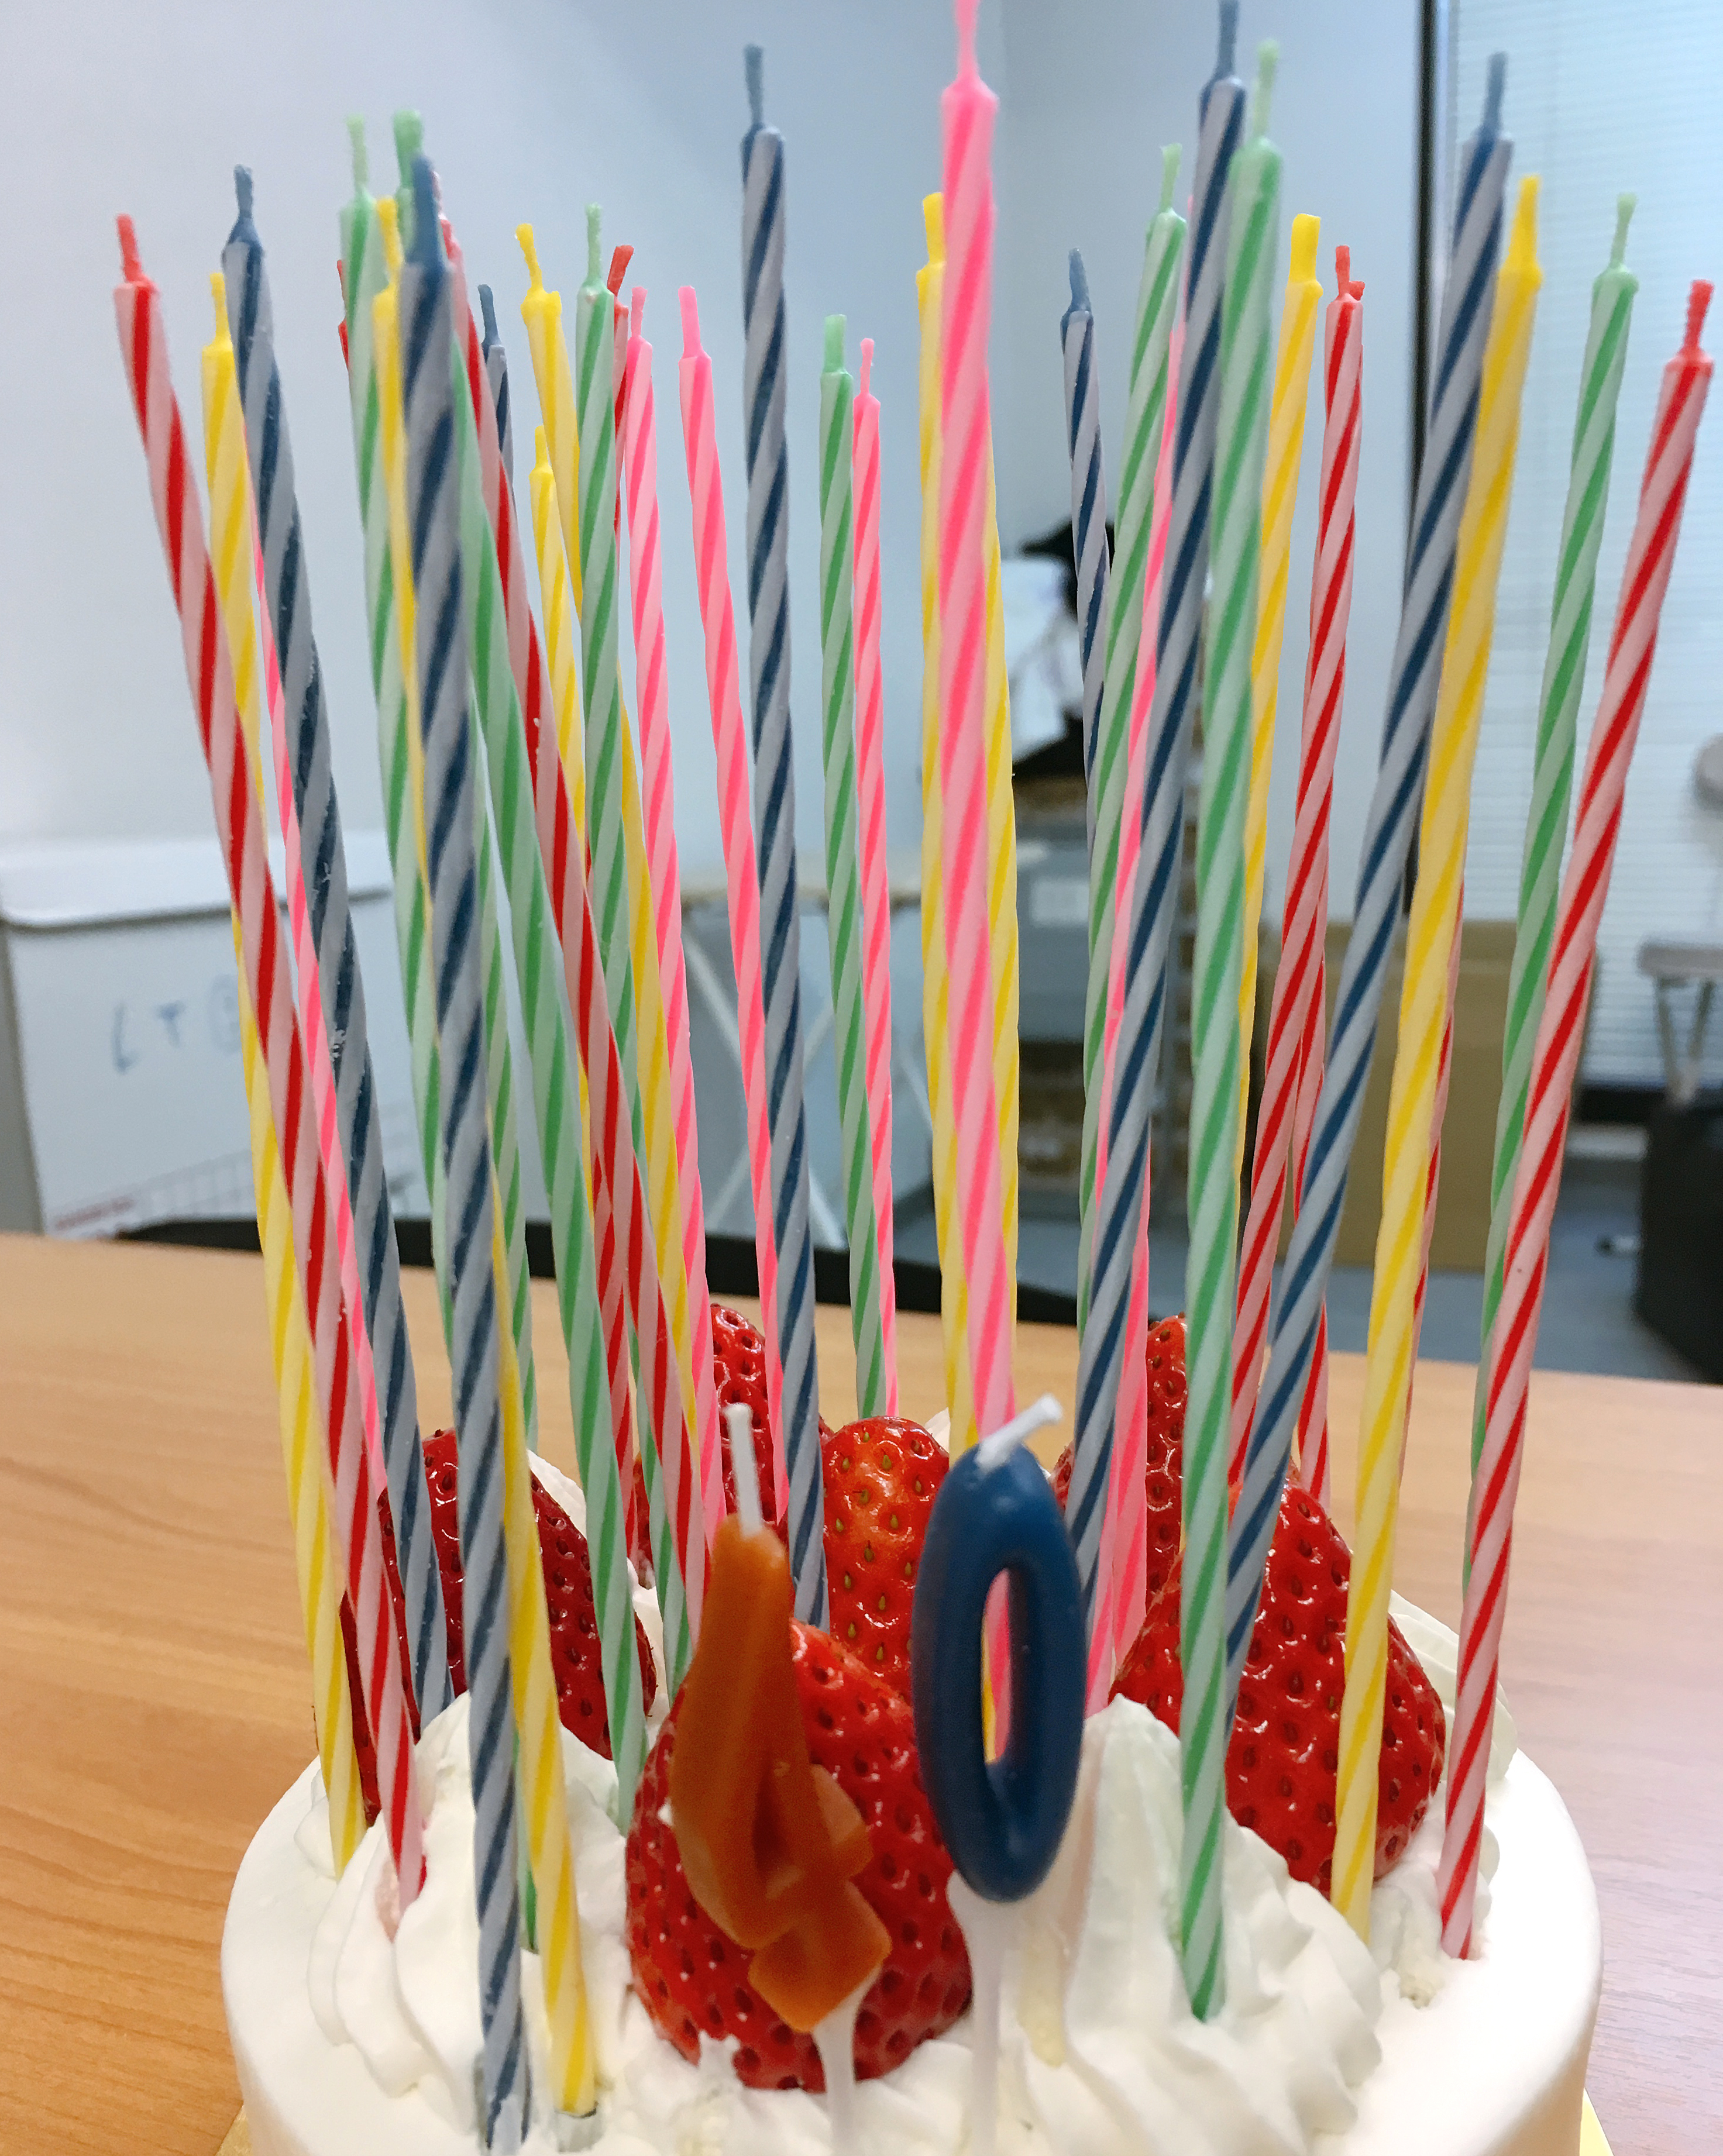 挑戦 オッサンの40歳の誕生日に ケーキにろうそく40本 立てたらこうなった ロケットニュース24